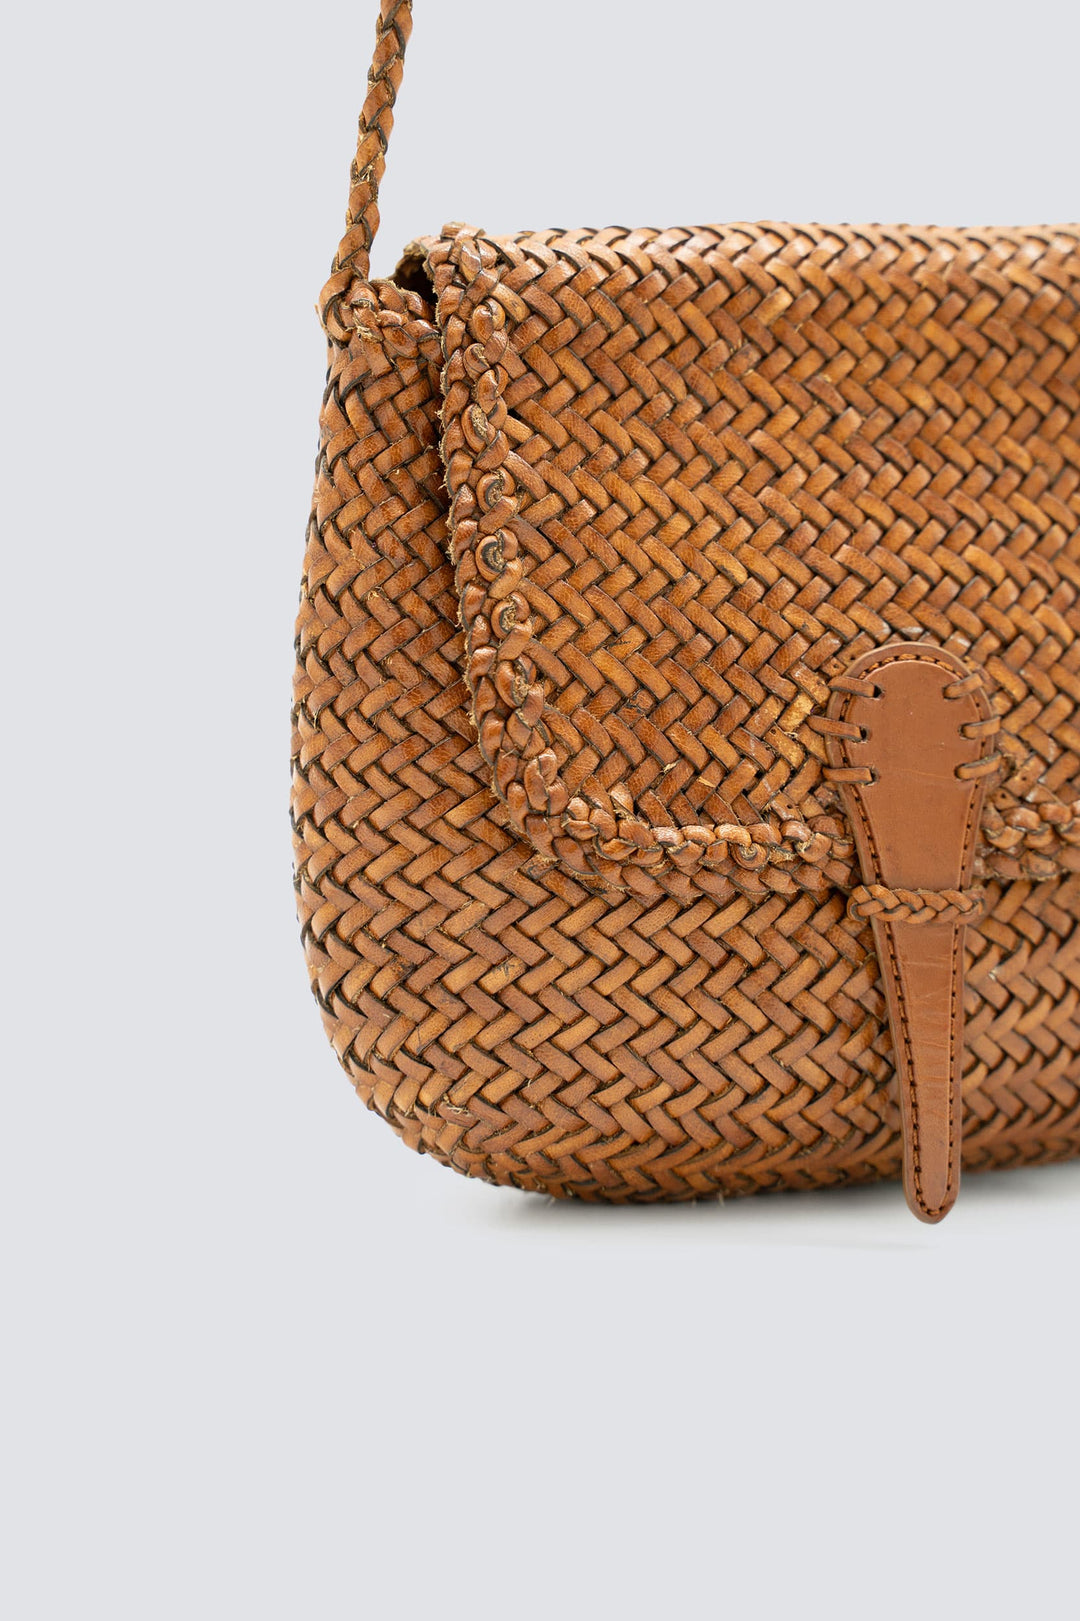 Dragon Diffusion woven leather bag handmade - Mini City Bag Tan